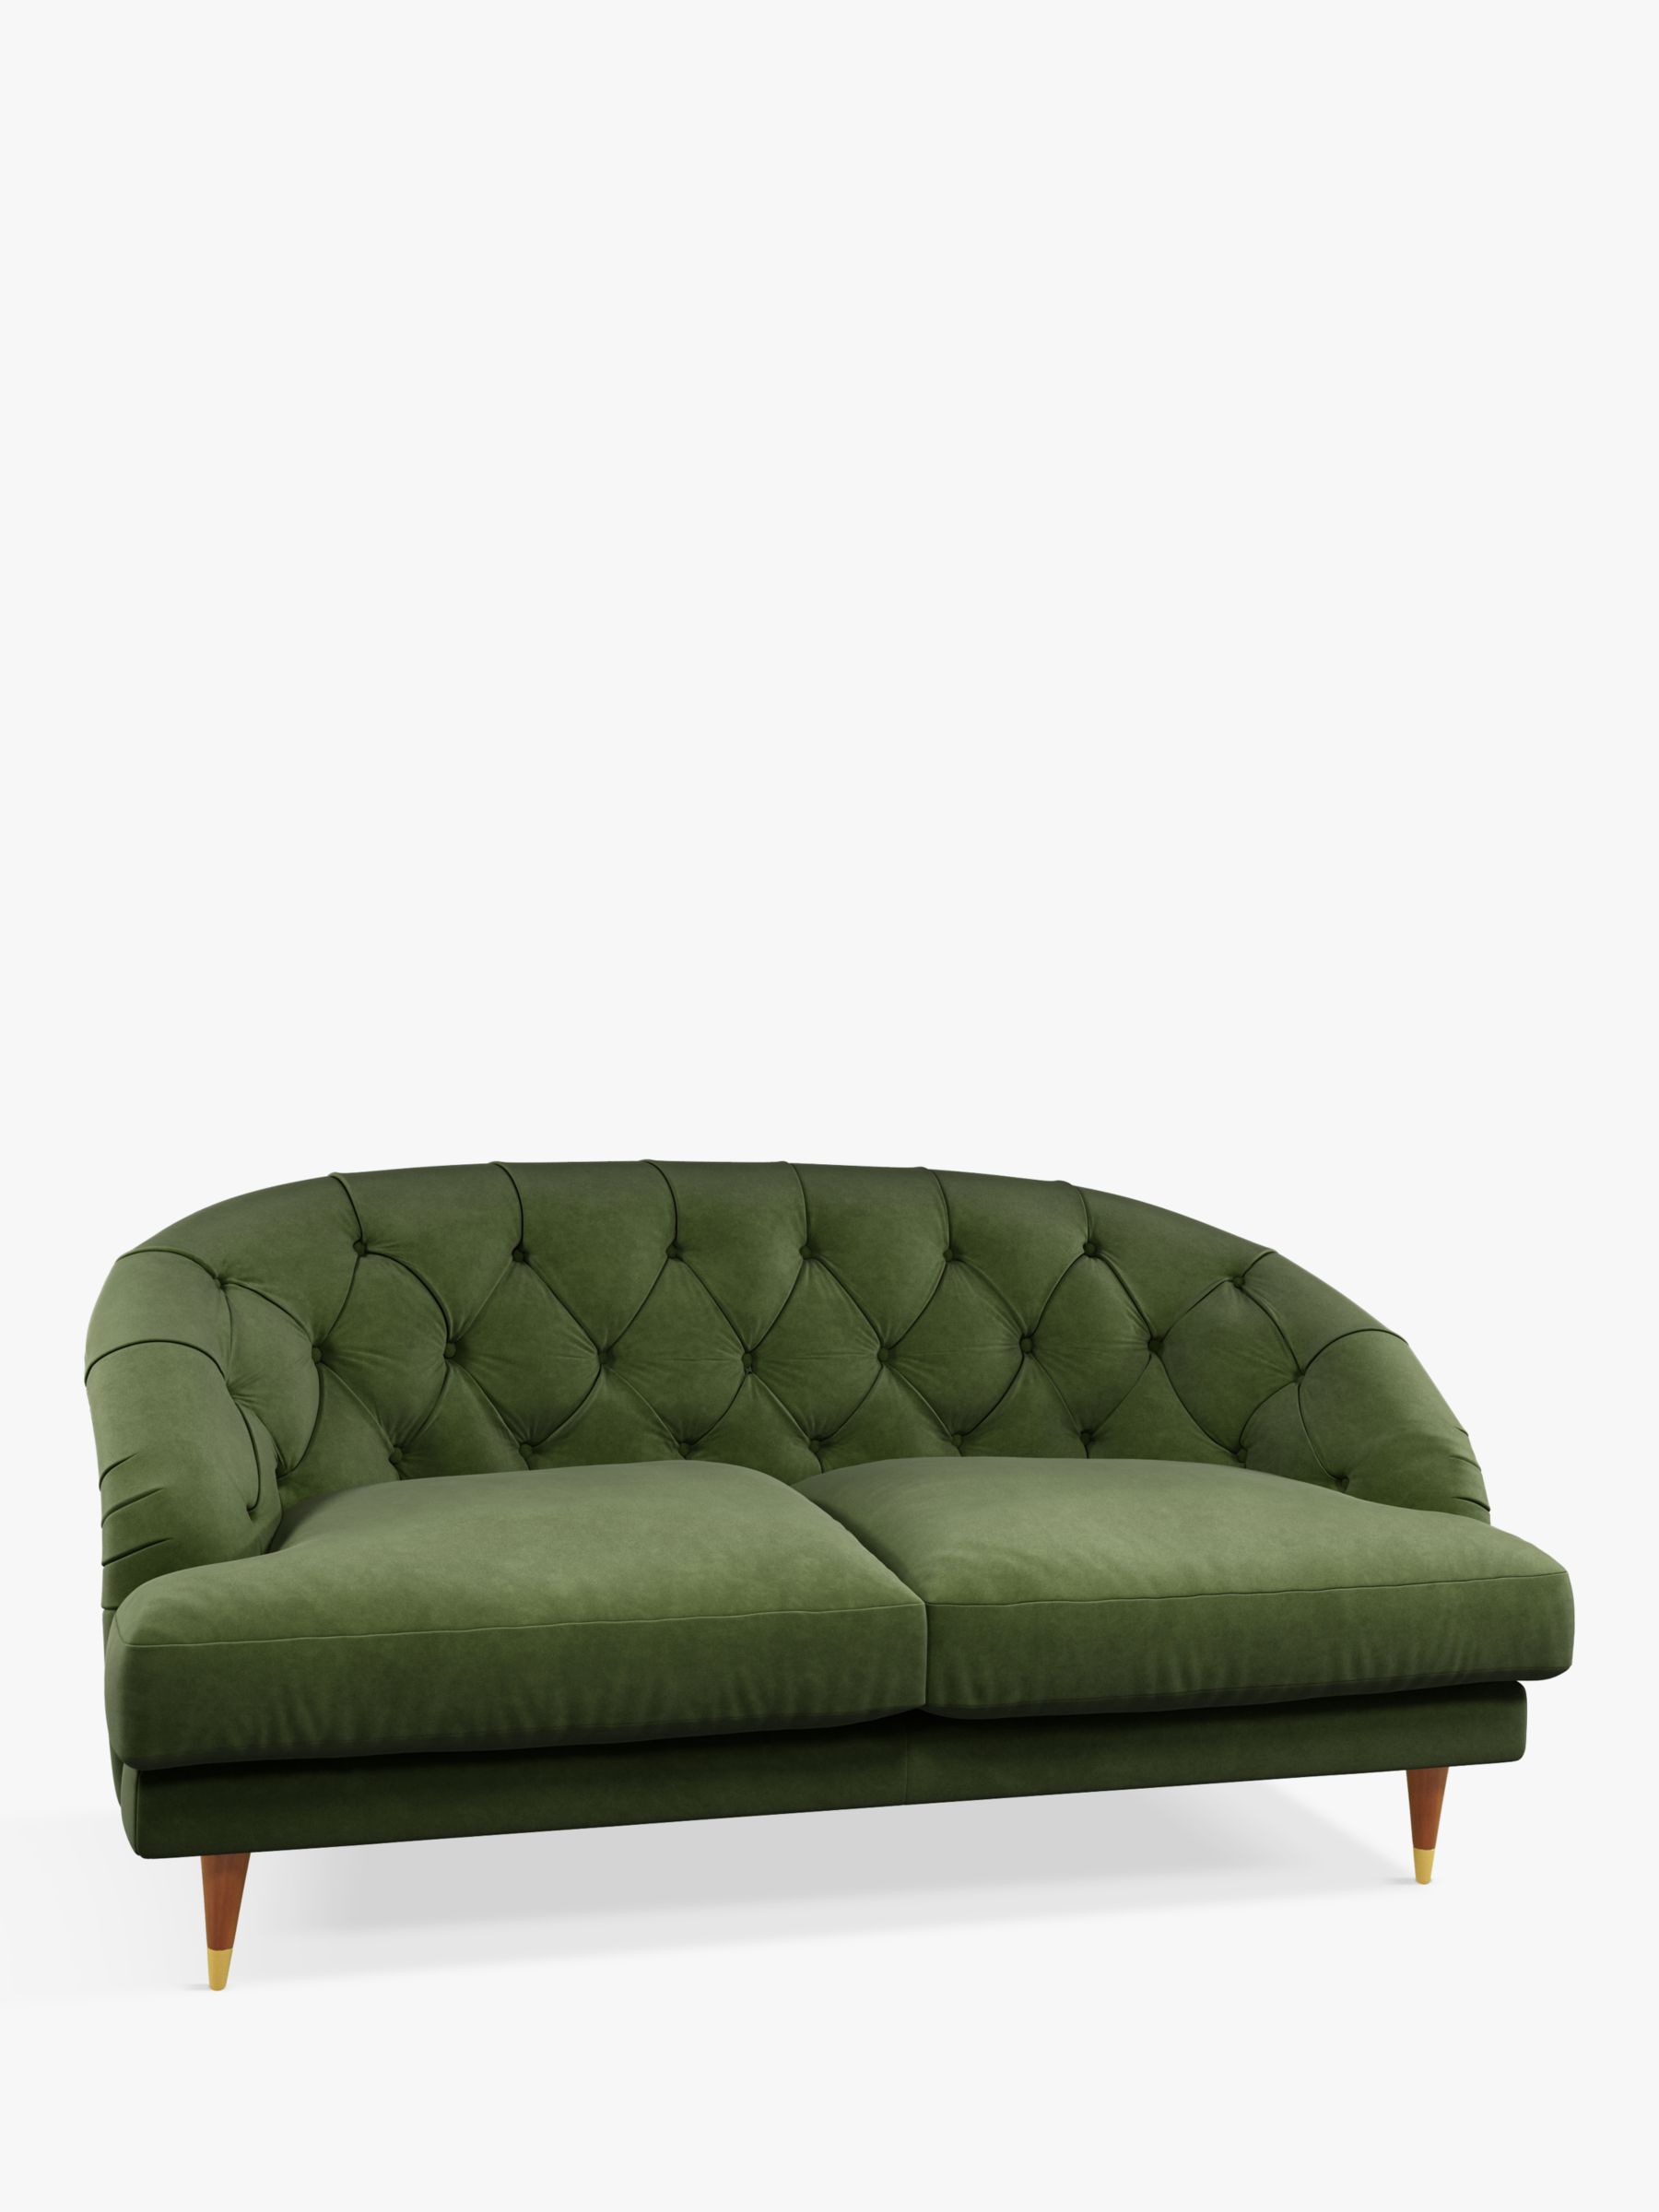 Radley Range, John Lewis + Swoon Radley Medium 2 Seater Sofa, Fern Green Velvet